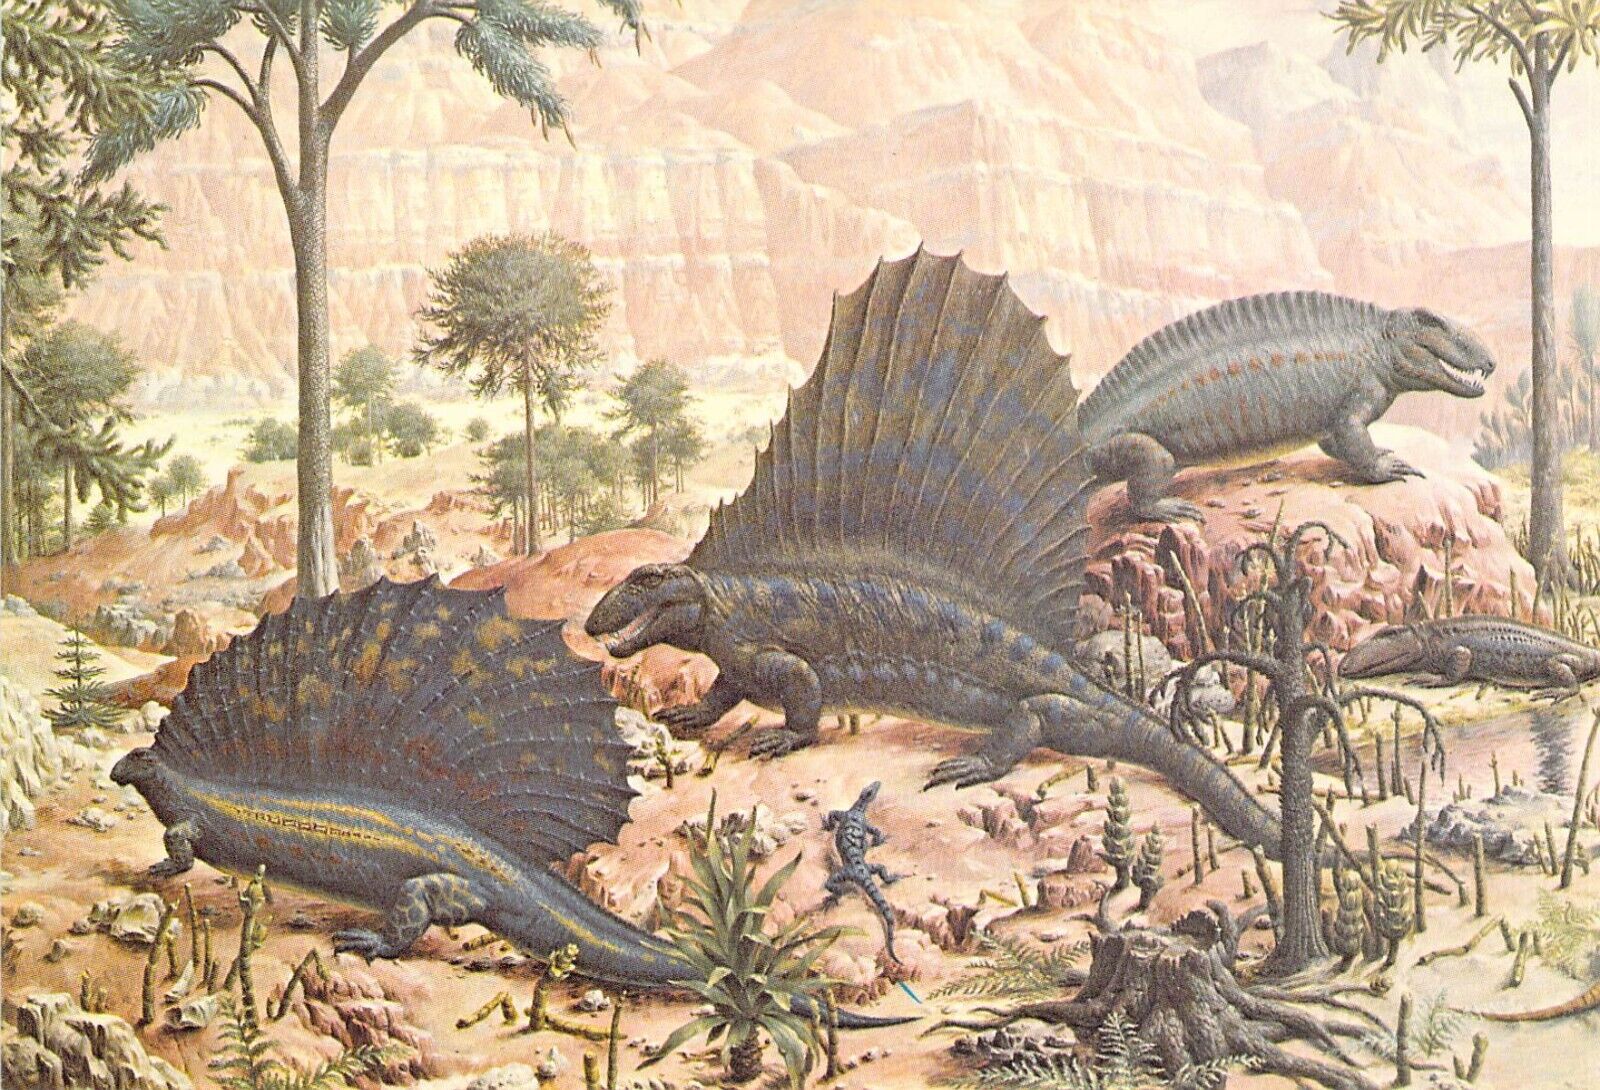 1977 Peabody #2  Museum Reptiles Mural 3 Dinosaur 4x6 postcard L157